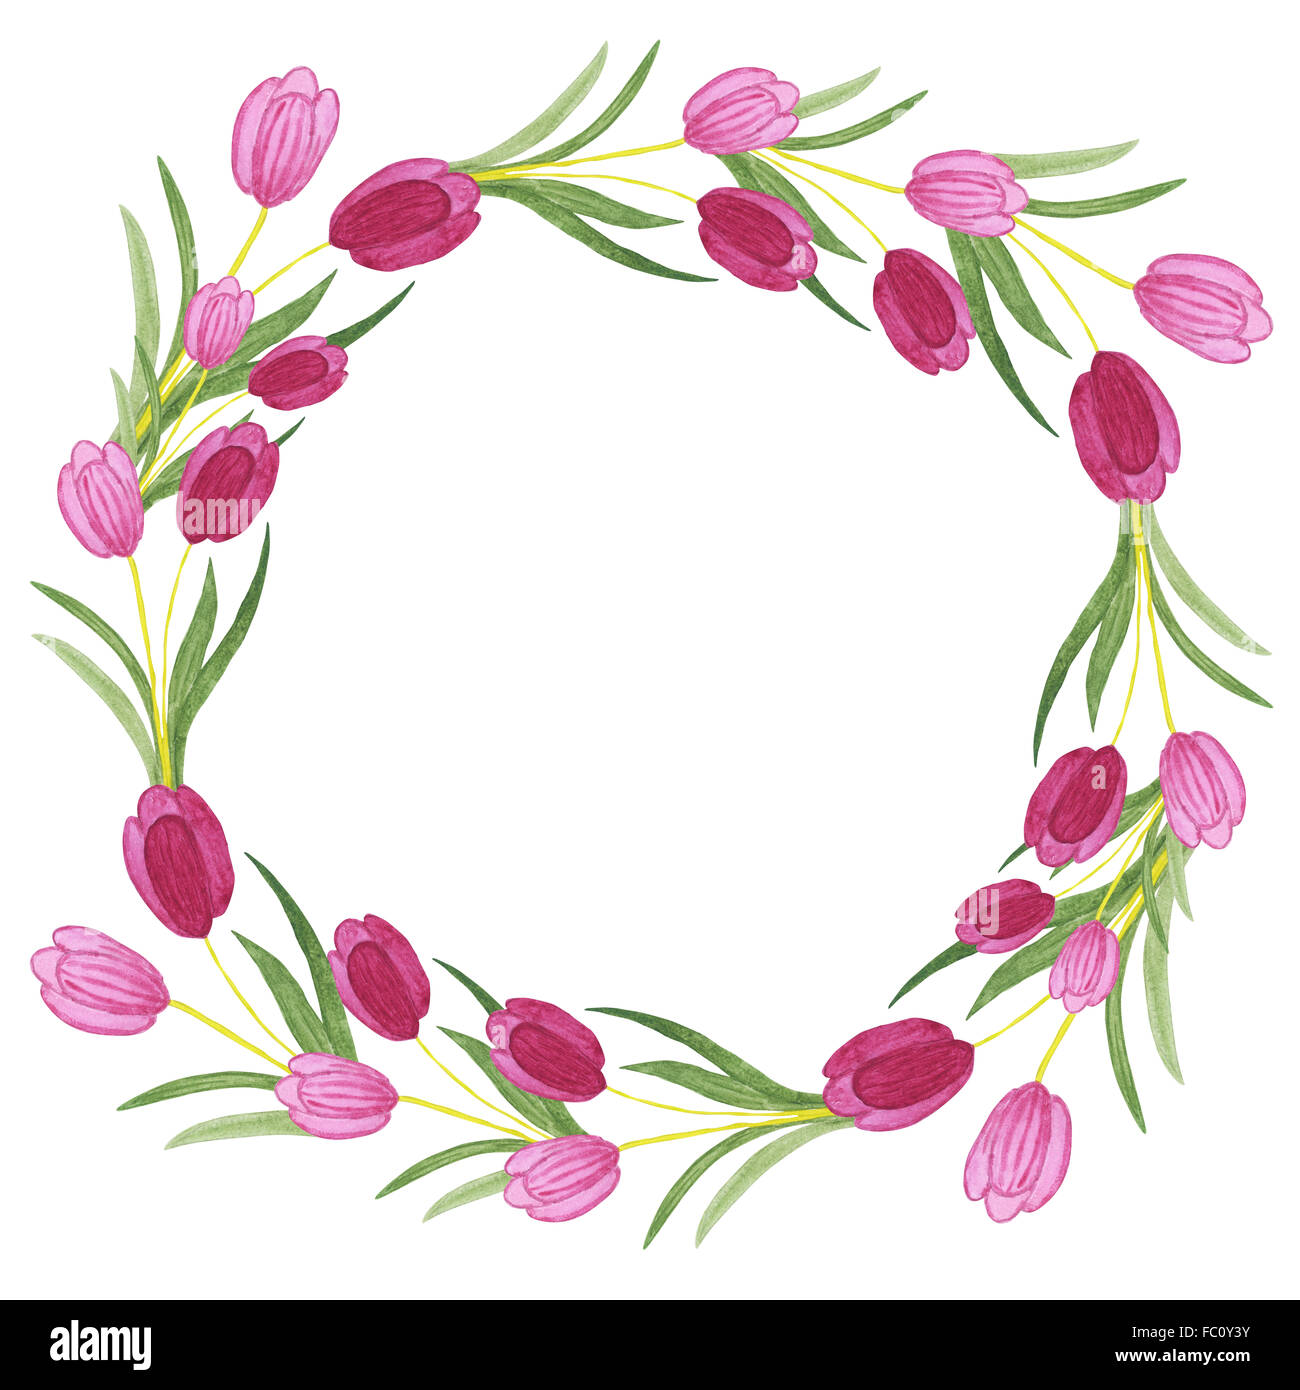 Aquarelle tulipes couronne sur fond blanc. Illustration à l'aquarelle avec copie espace. Concept de fleurs pour un mariage ou une partie Banque D'Images